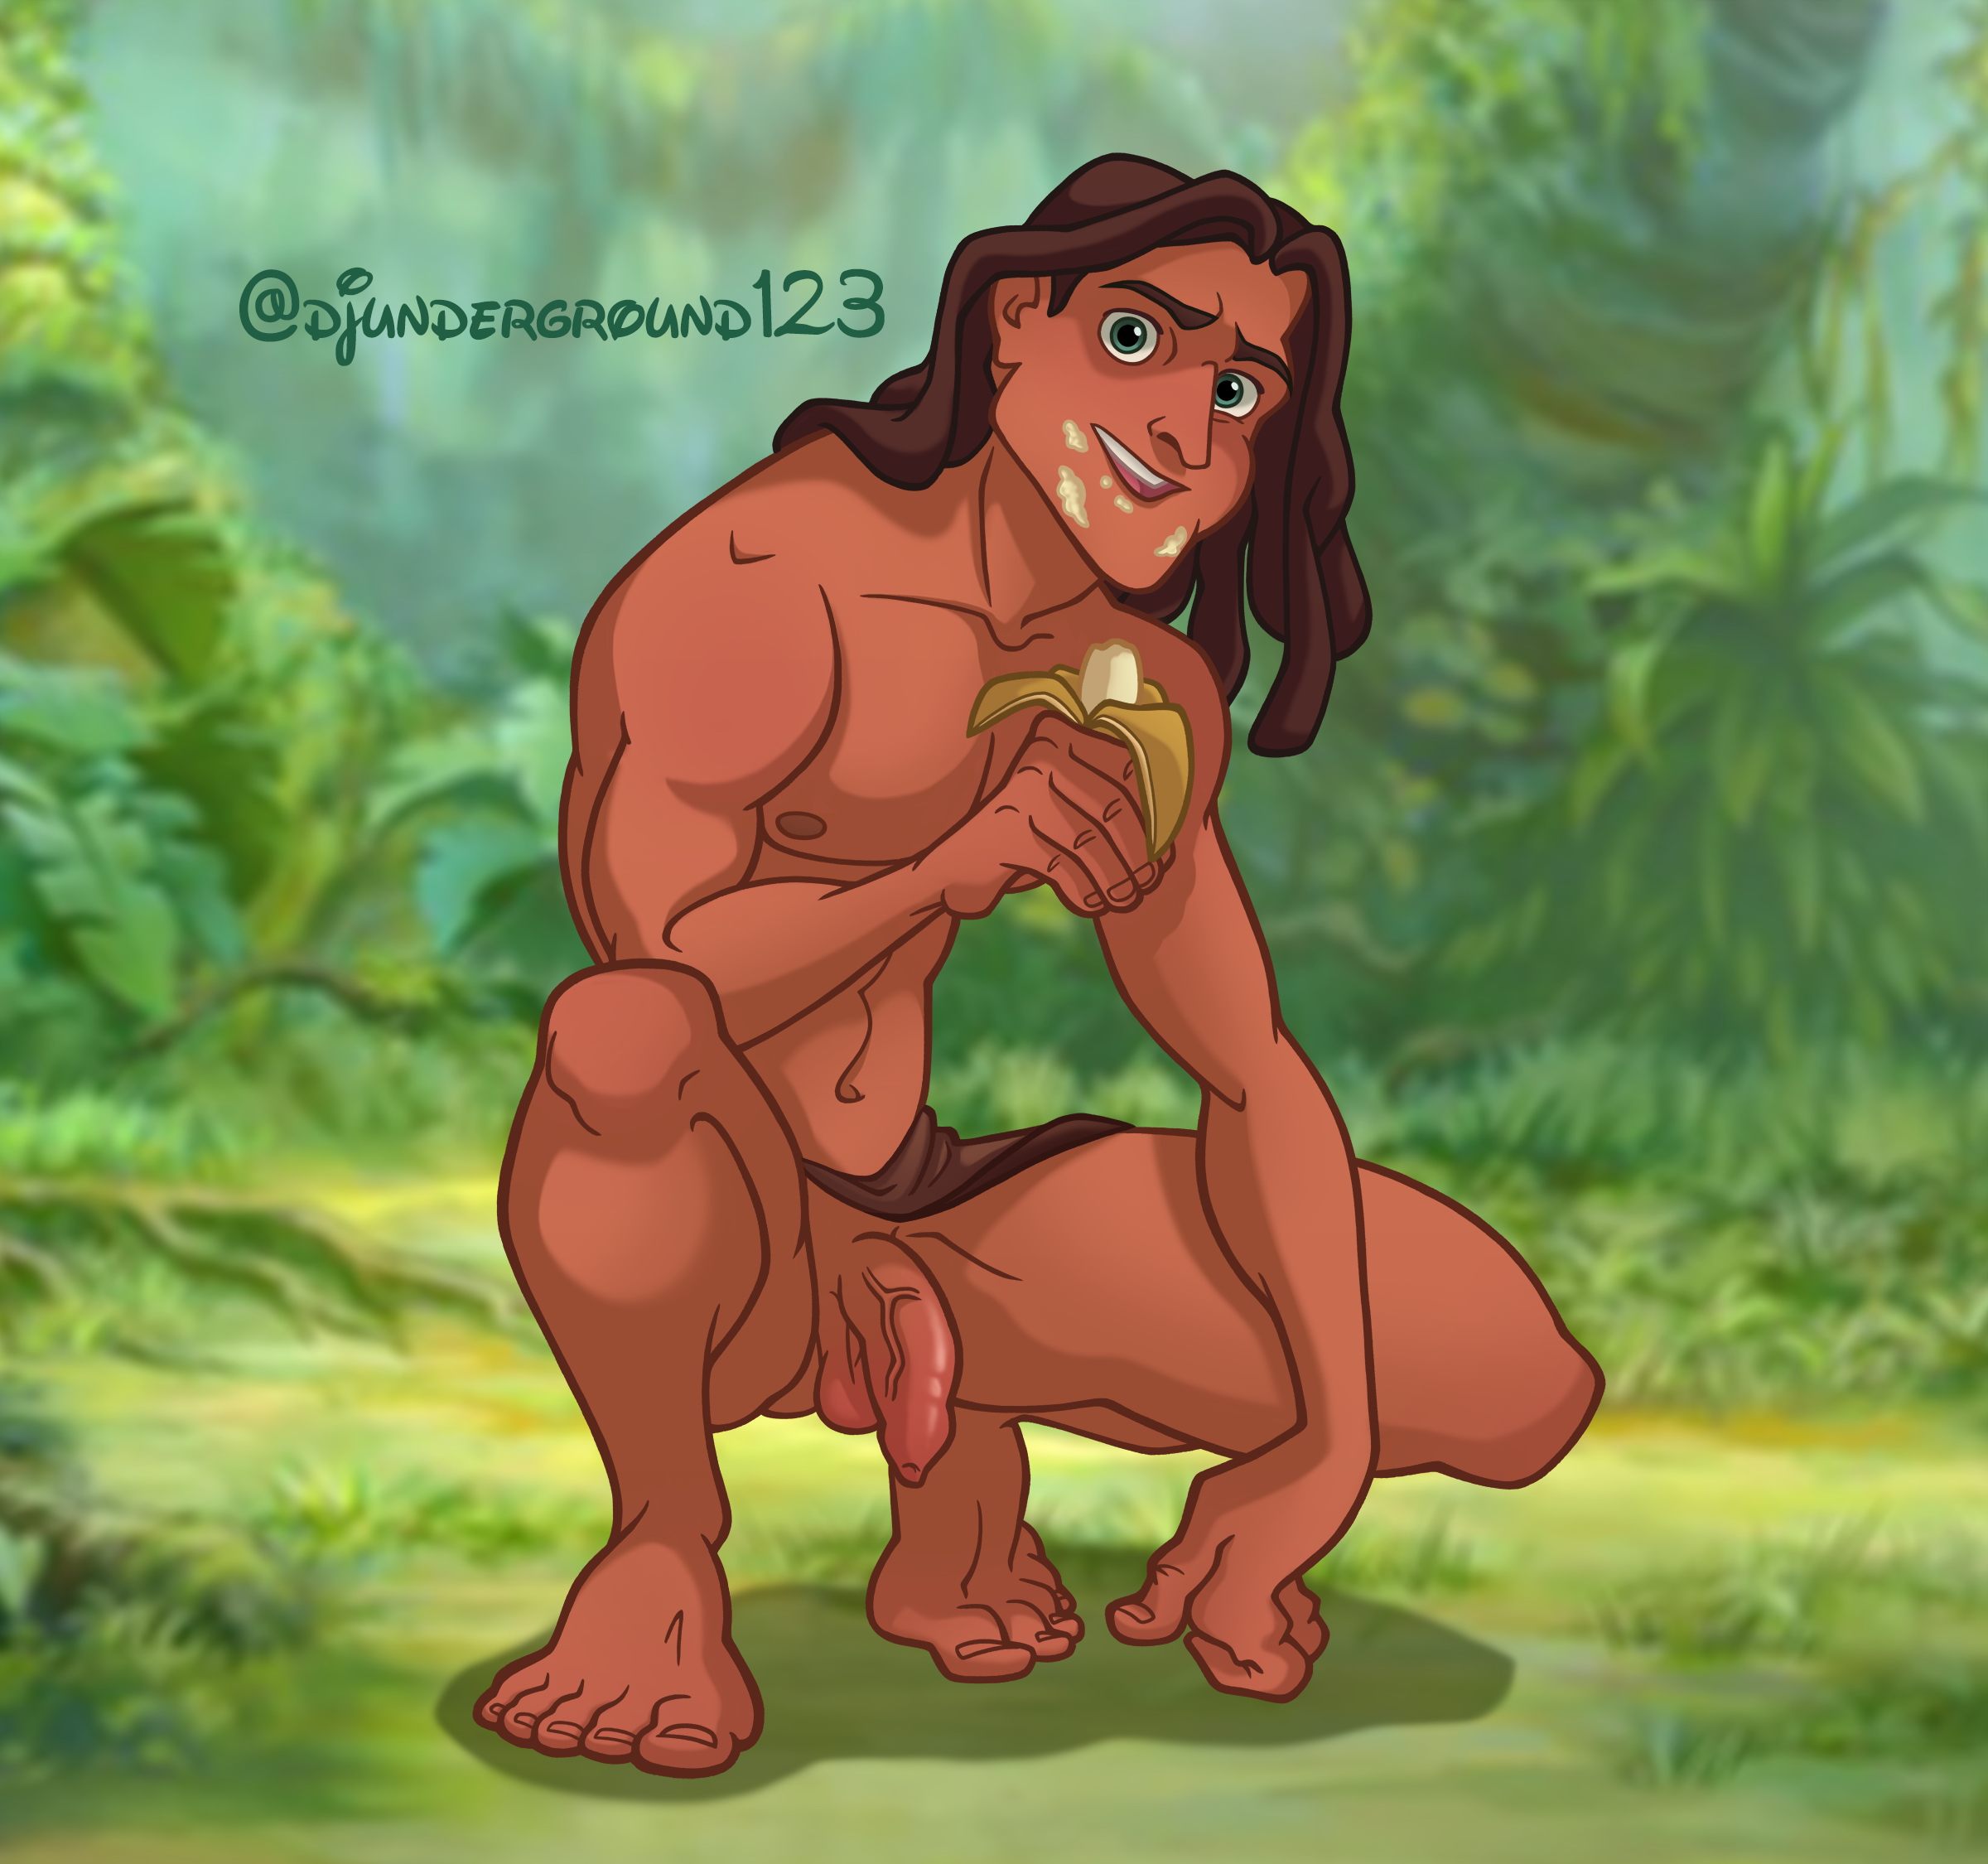 Banana makes Tarzan horny and cock getting strong Scrolller.